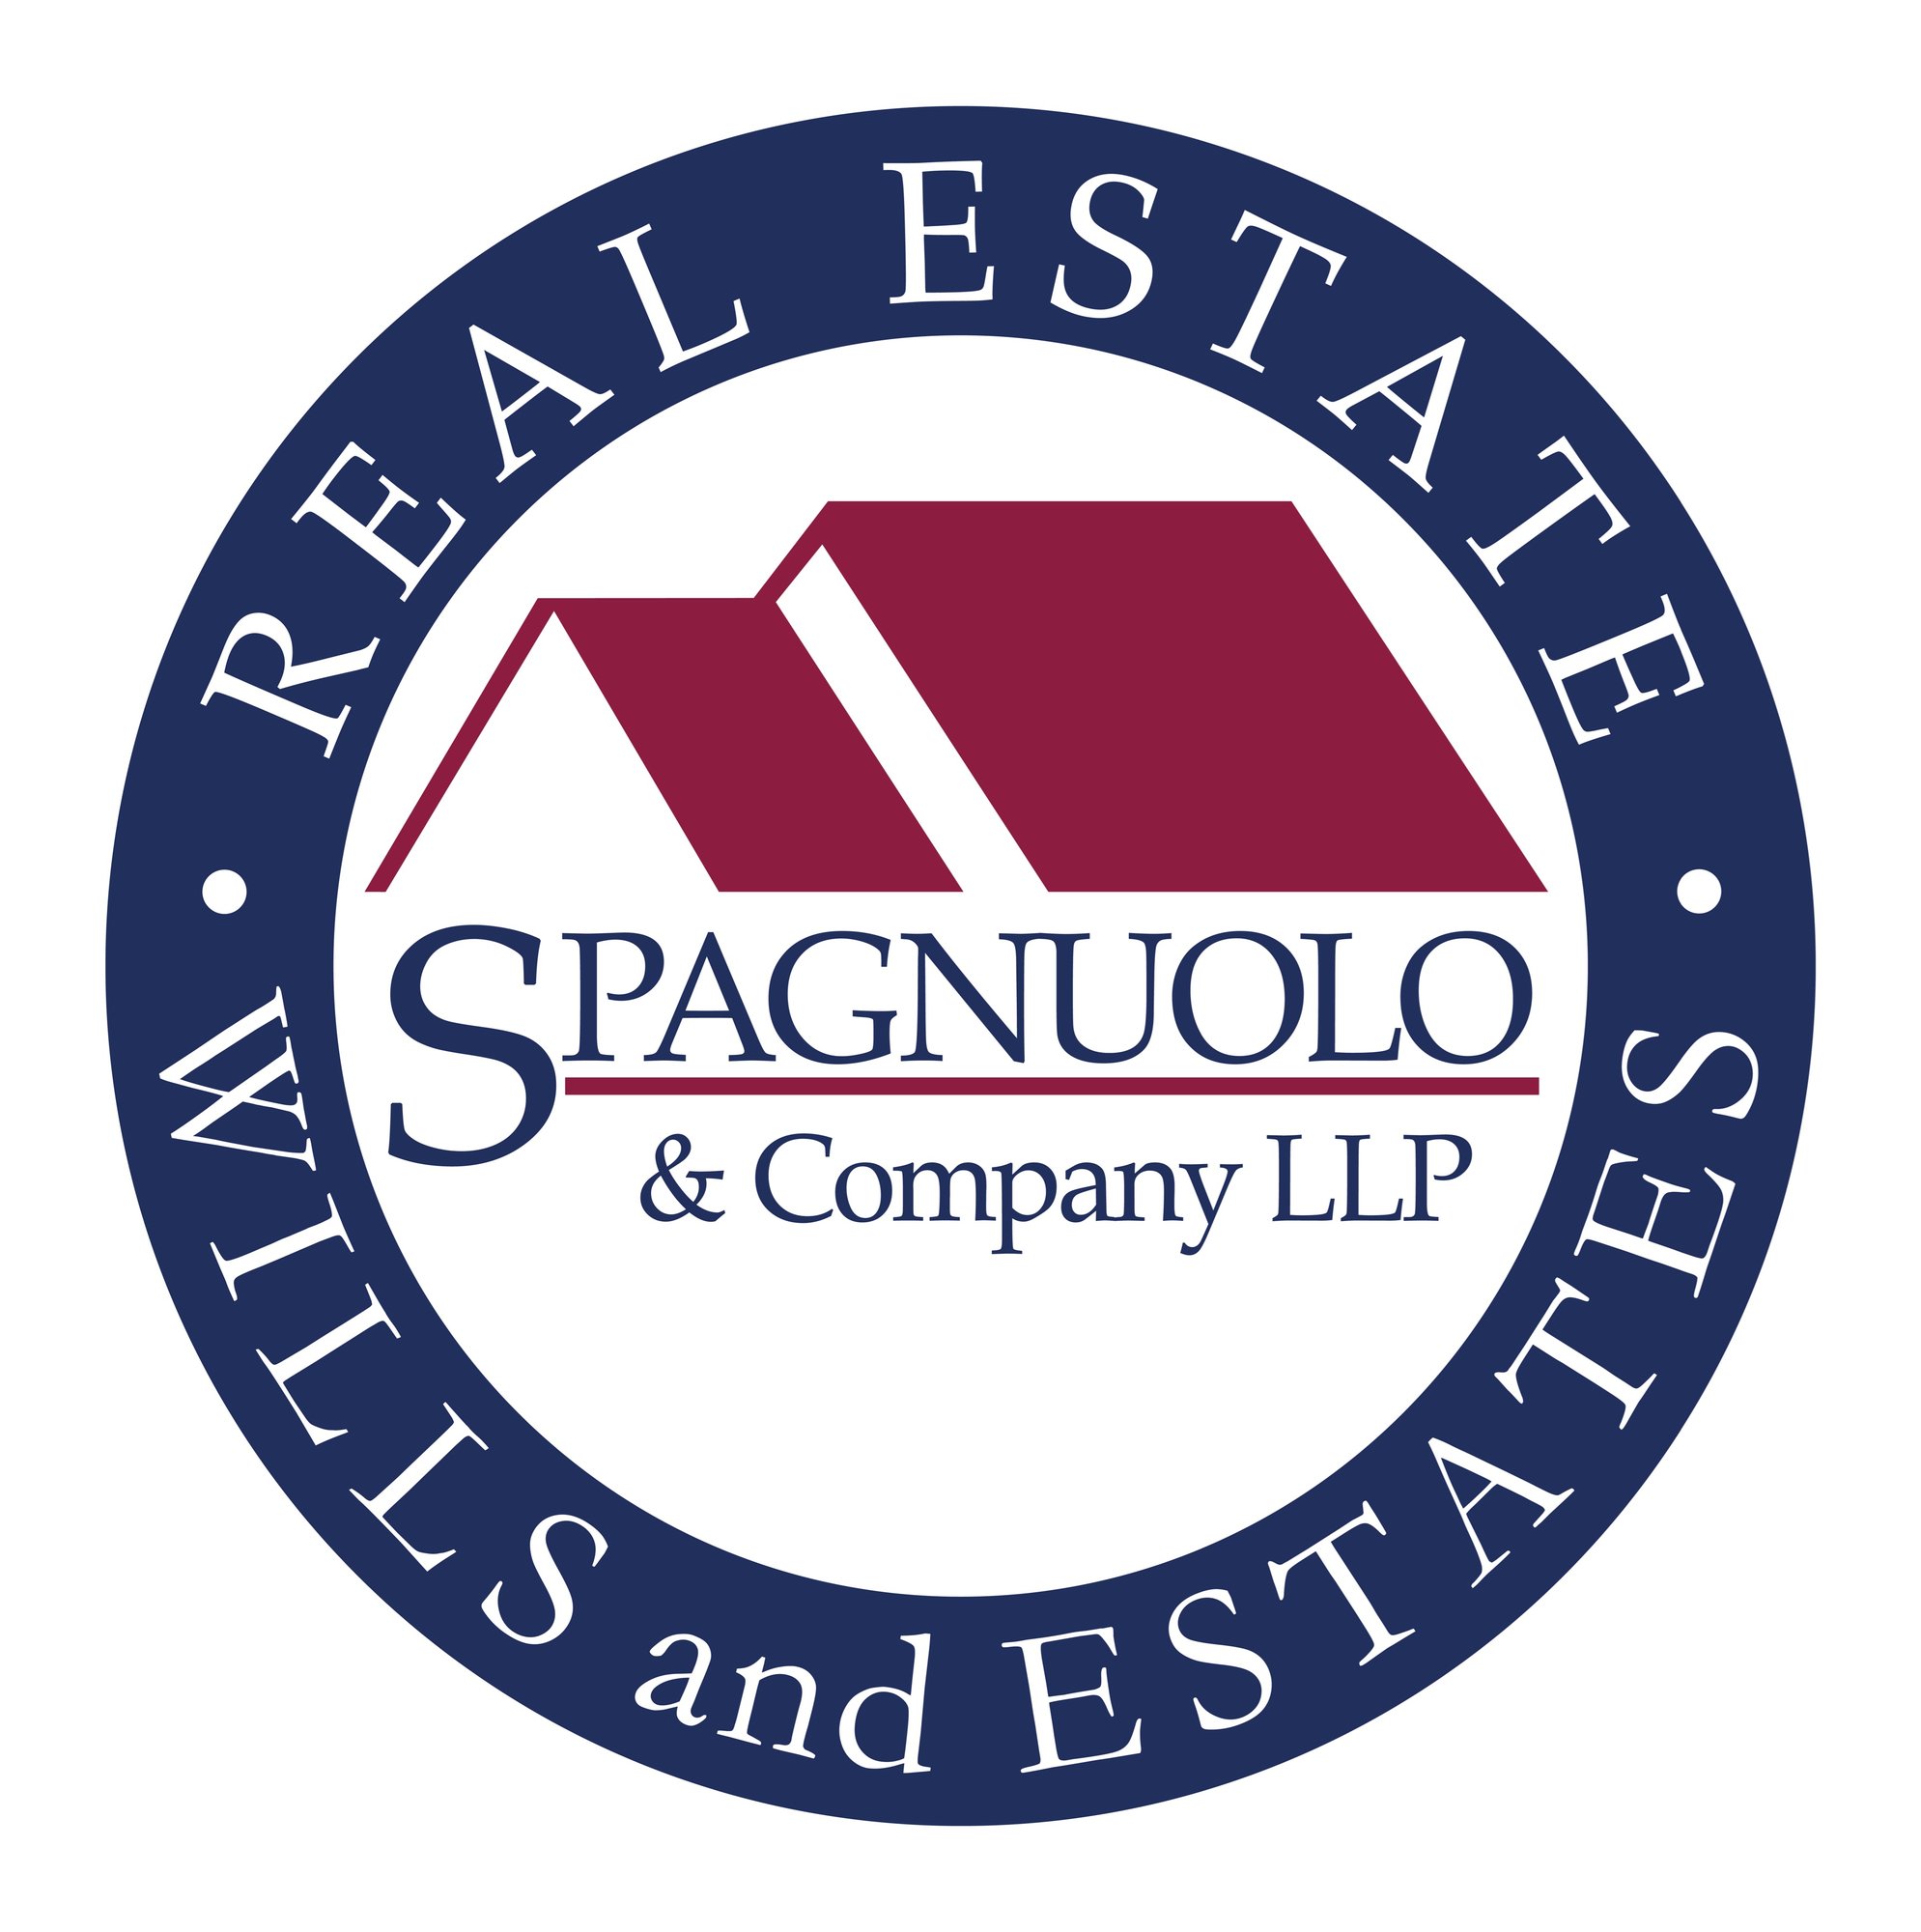 Tony Spagnuolo, Spagnuolo & Co Lawyers